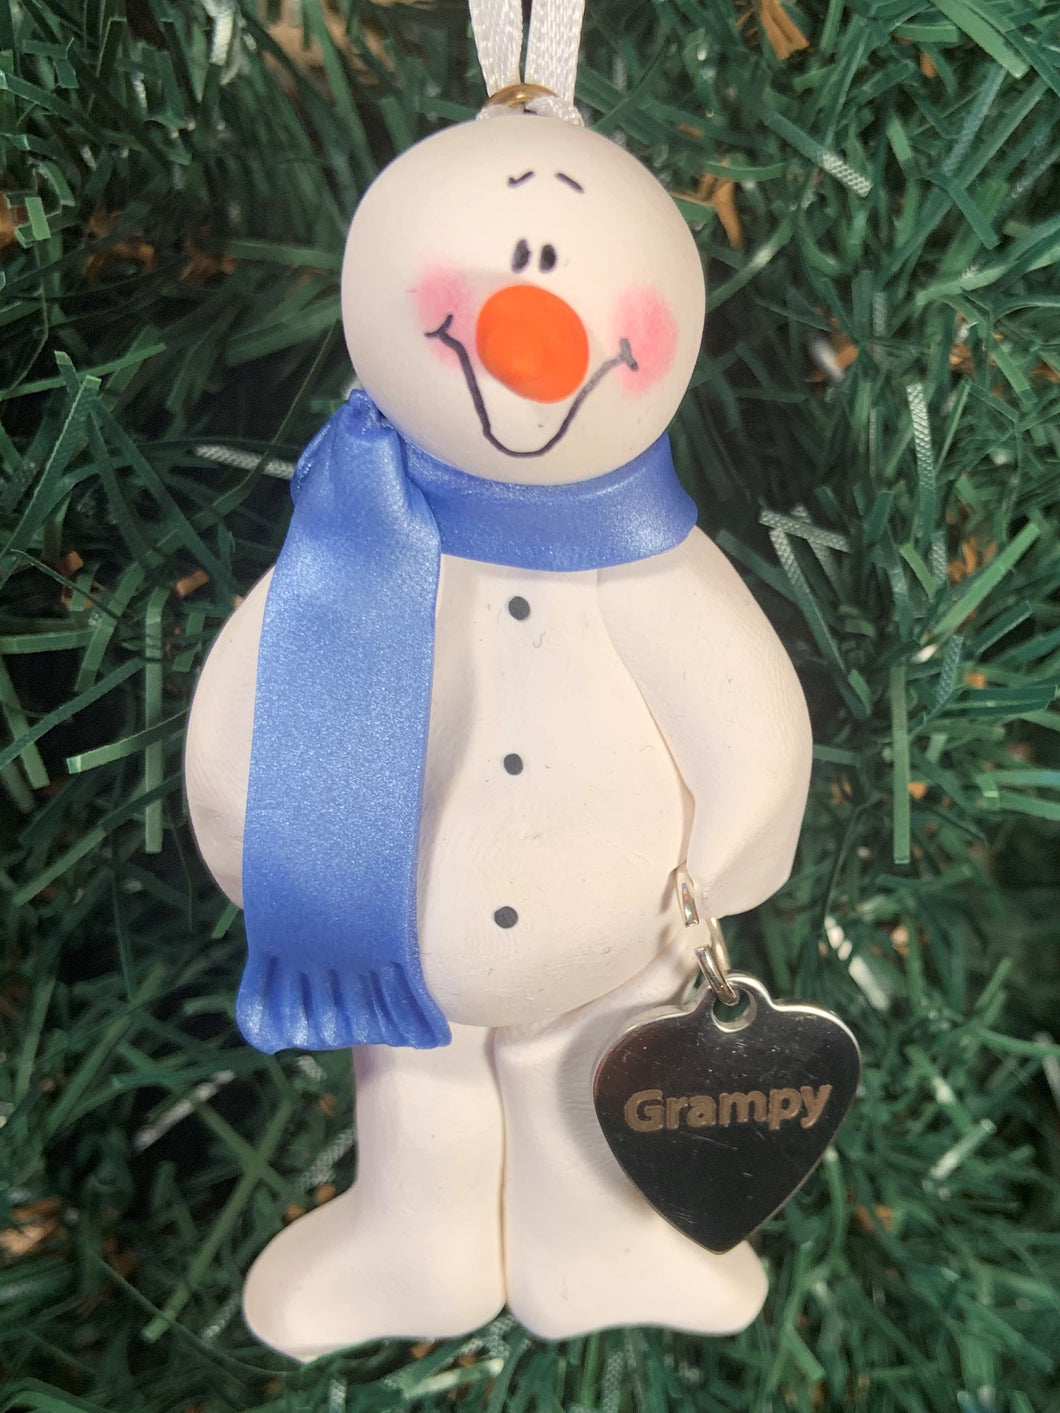 Grampy Snowman Tree Ornament